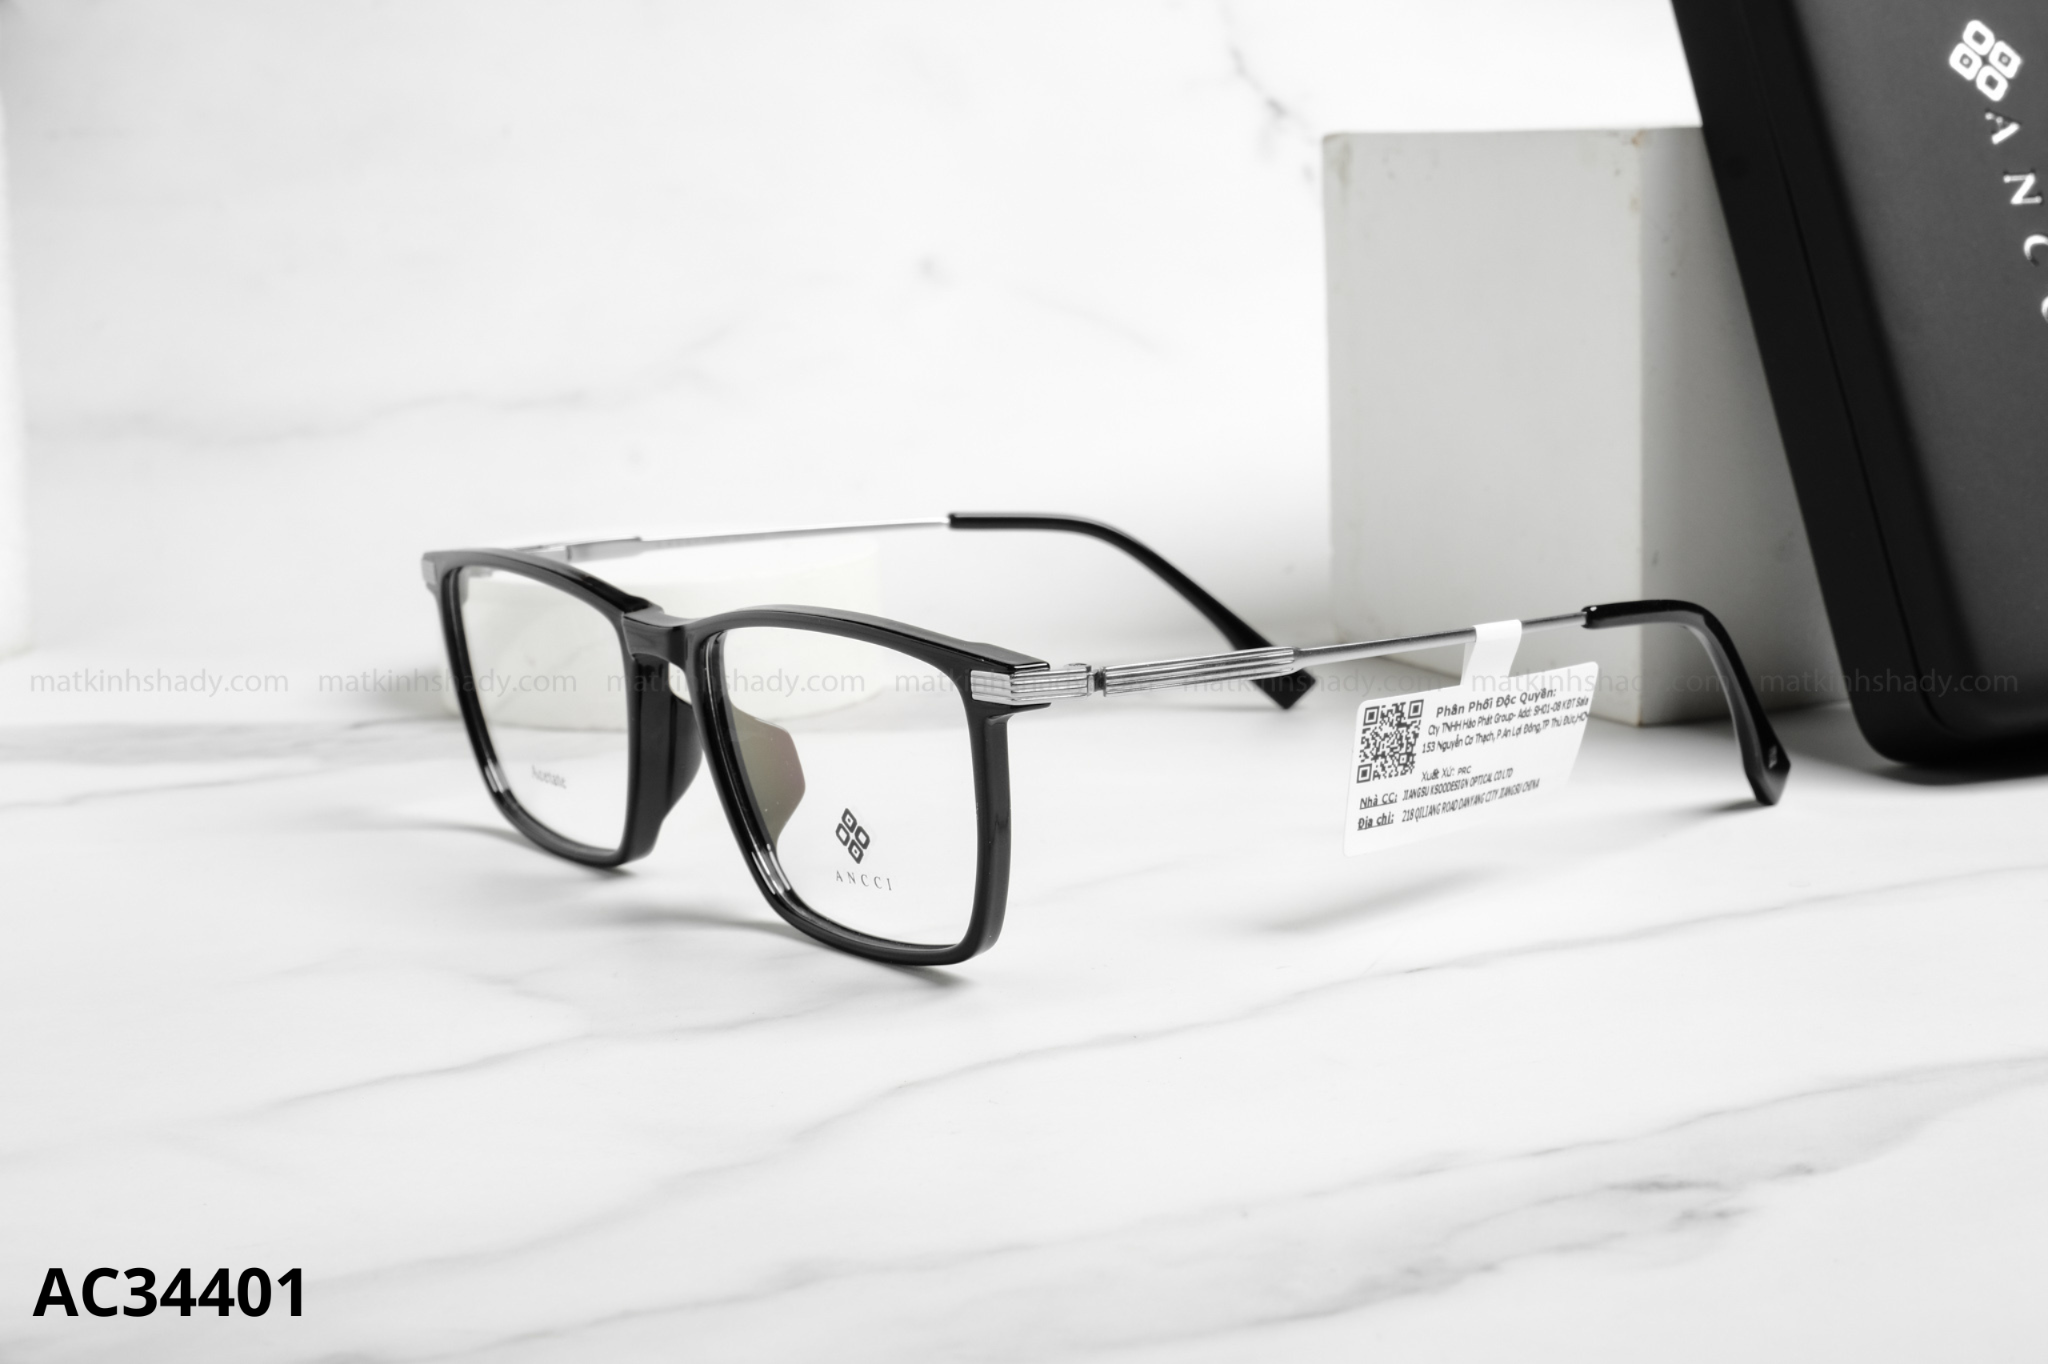  ANCCI Eyewear - Glasses - AC34401 